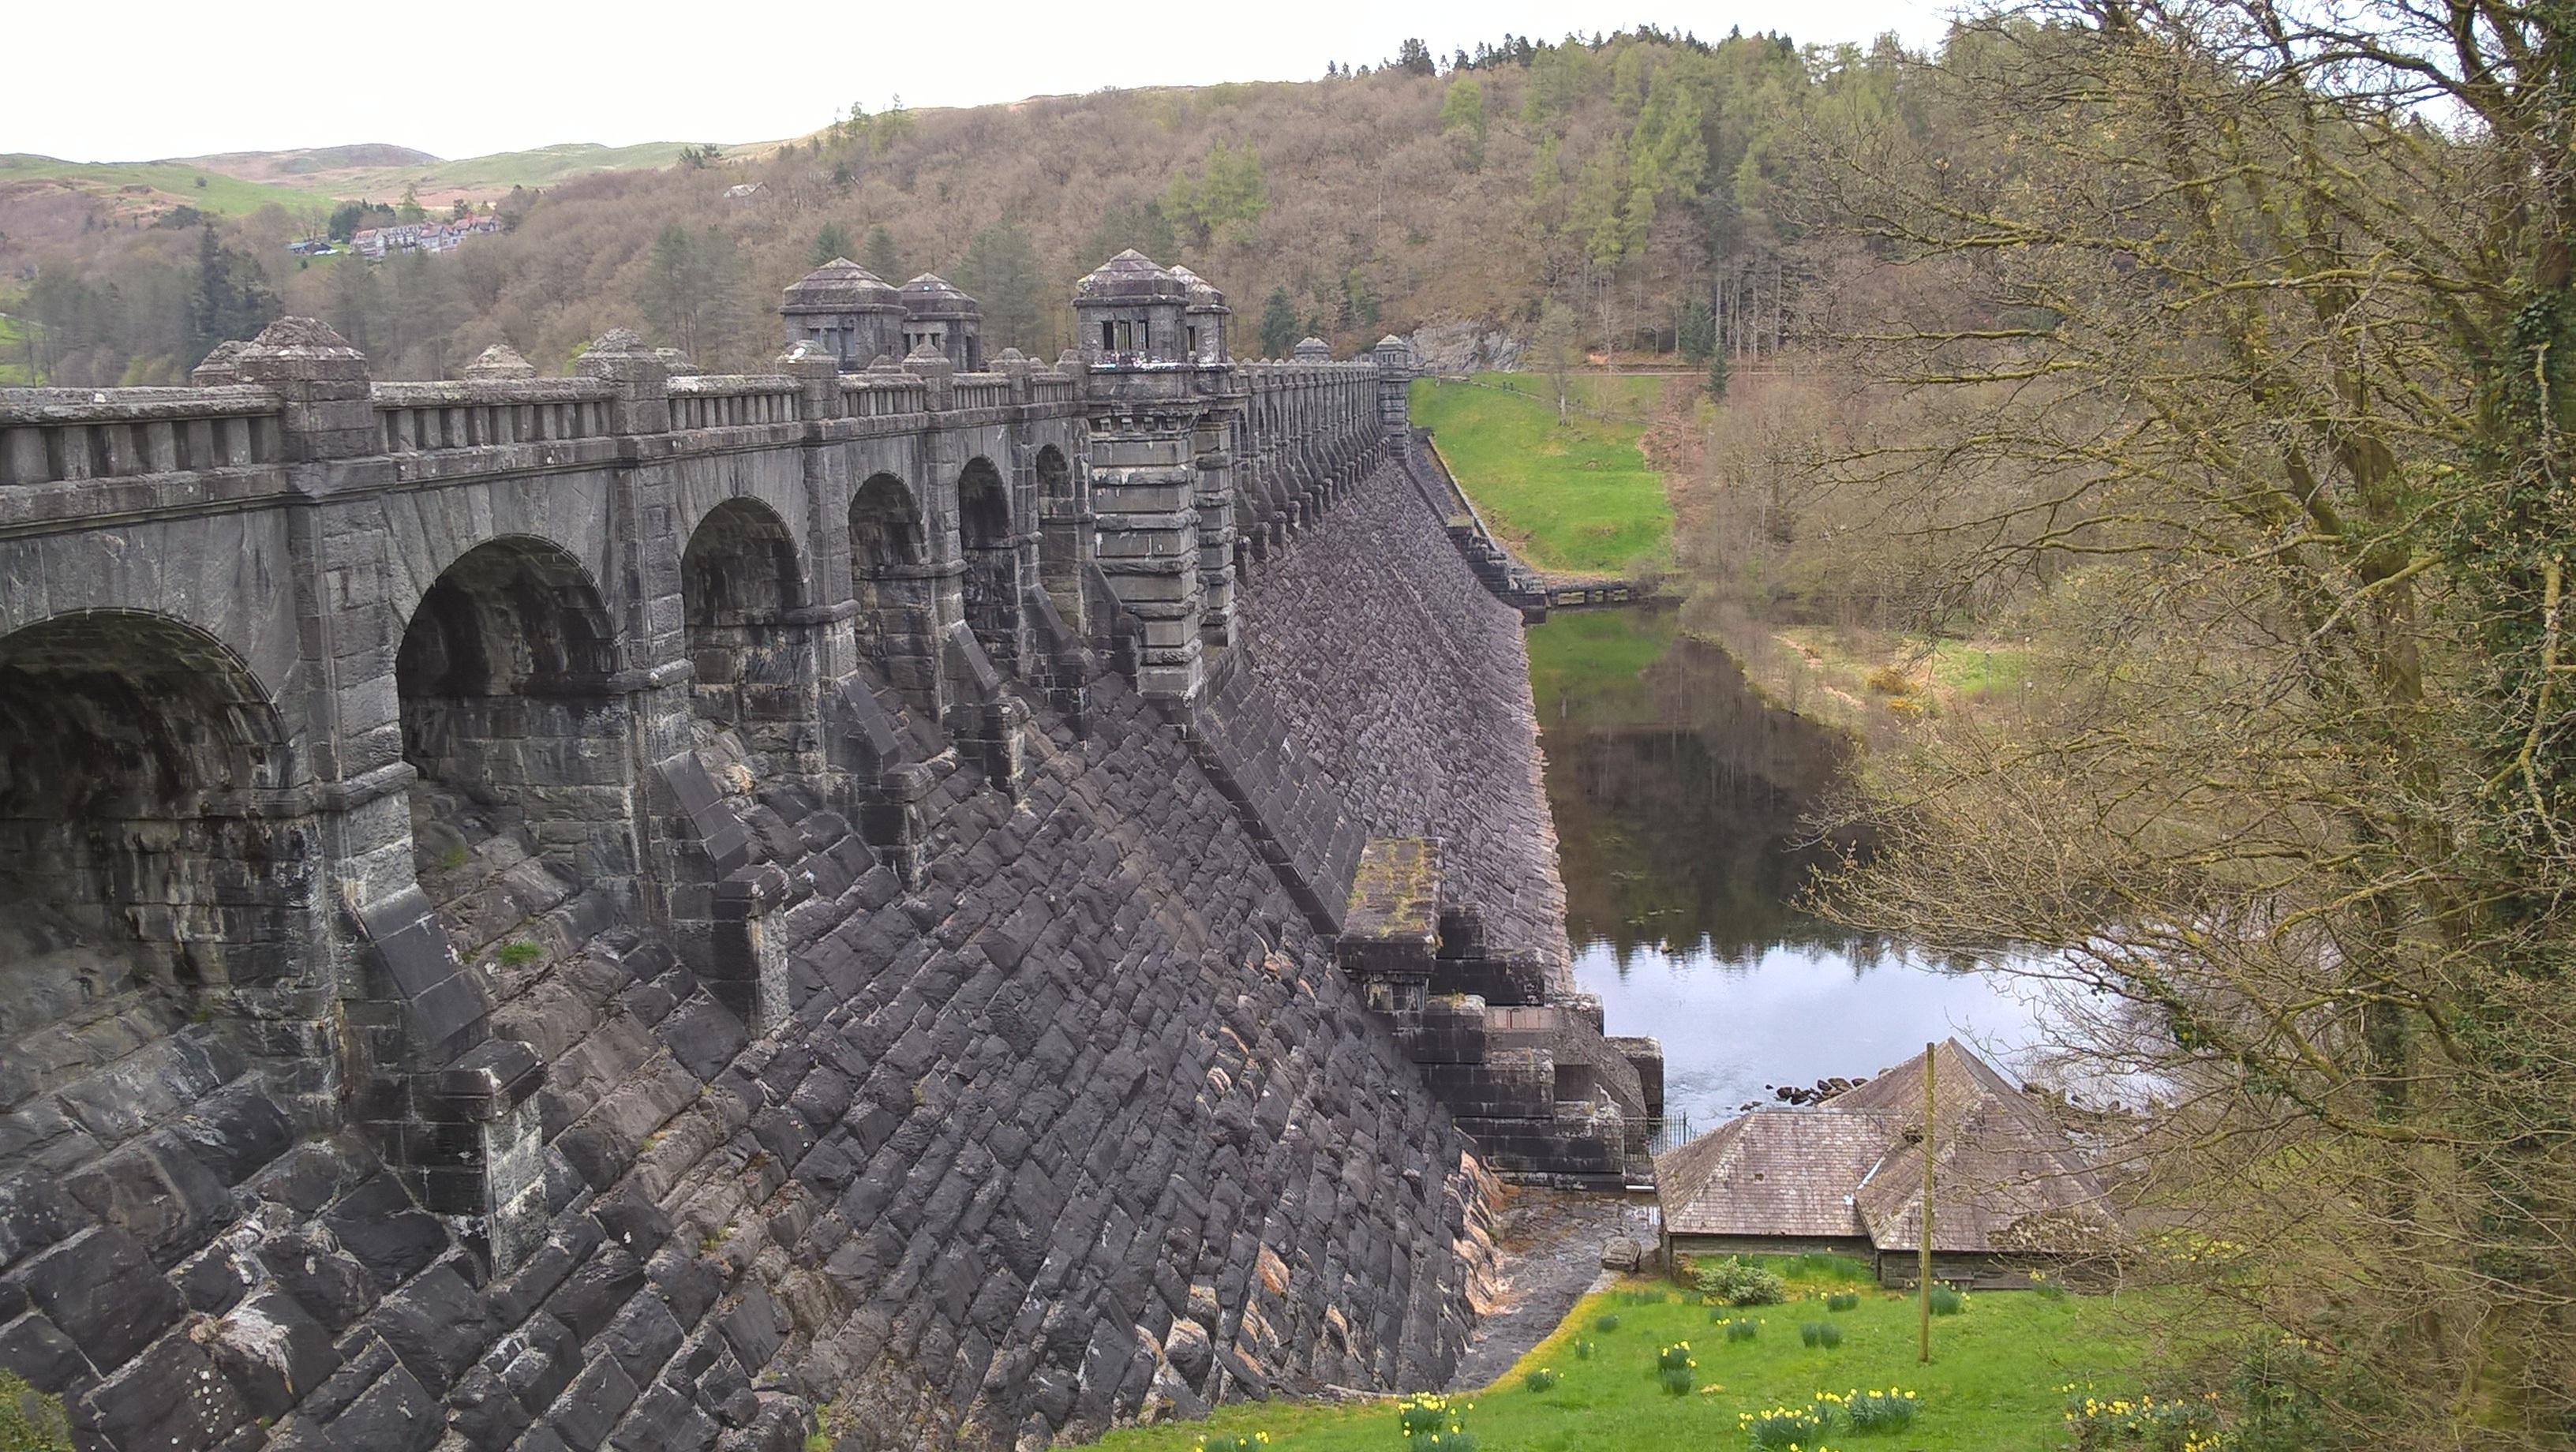 Powys Dam